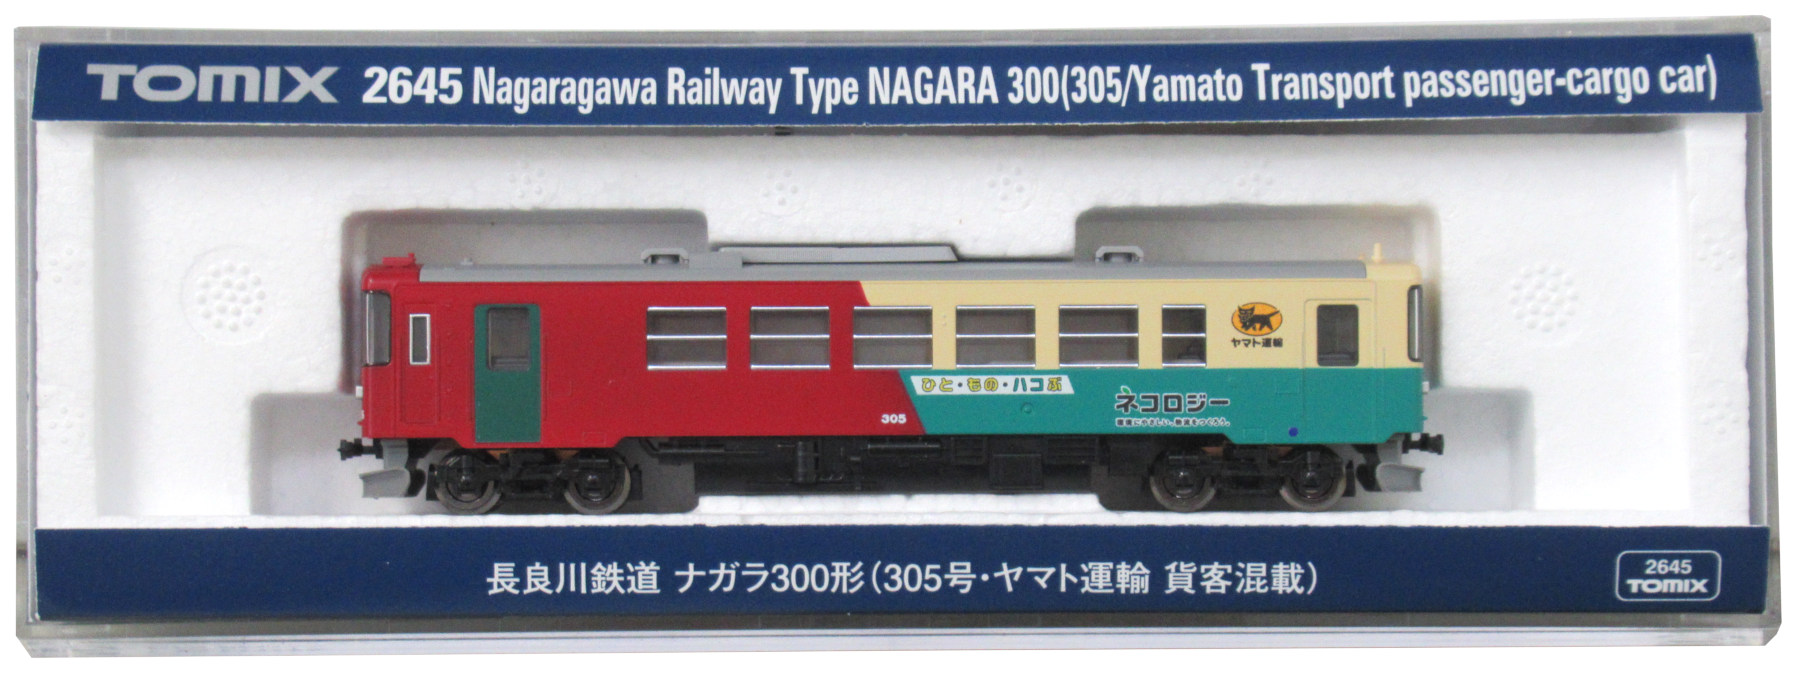 2645 長良川鉄道 ナガラ300形(305号・ヤマト運輸 貨客混載)(動力付き) Nゲージ 鉄道模型 TOMIX(トミックス)